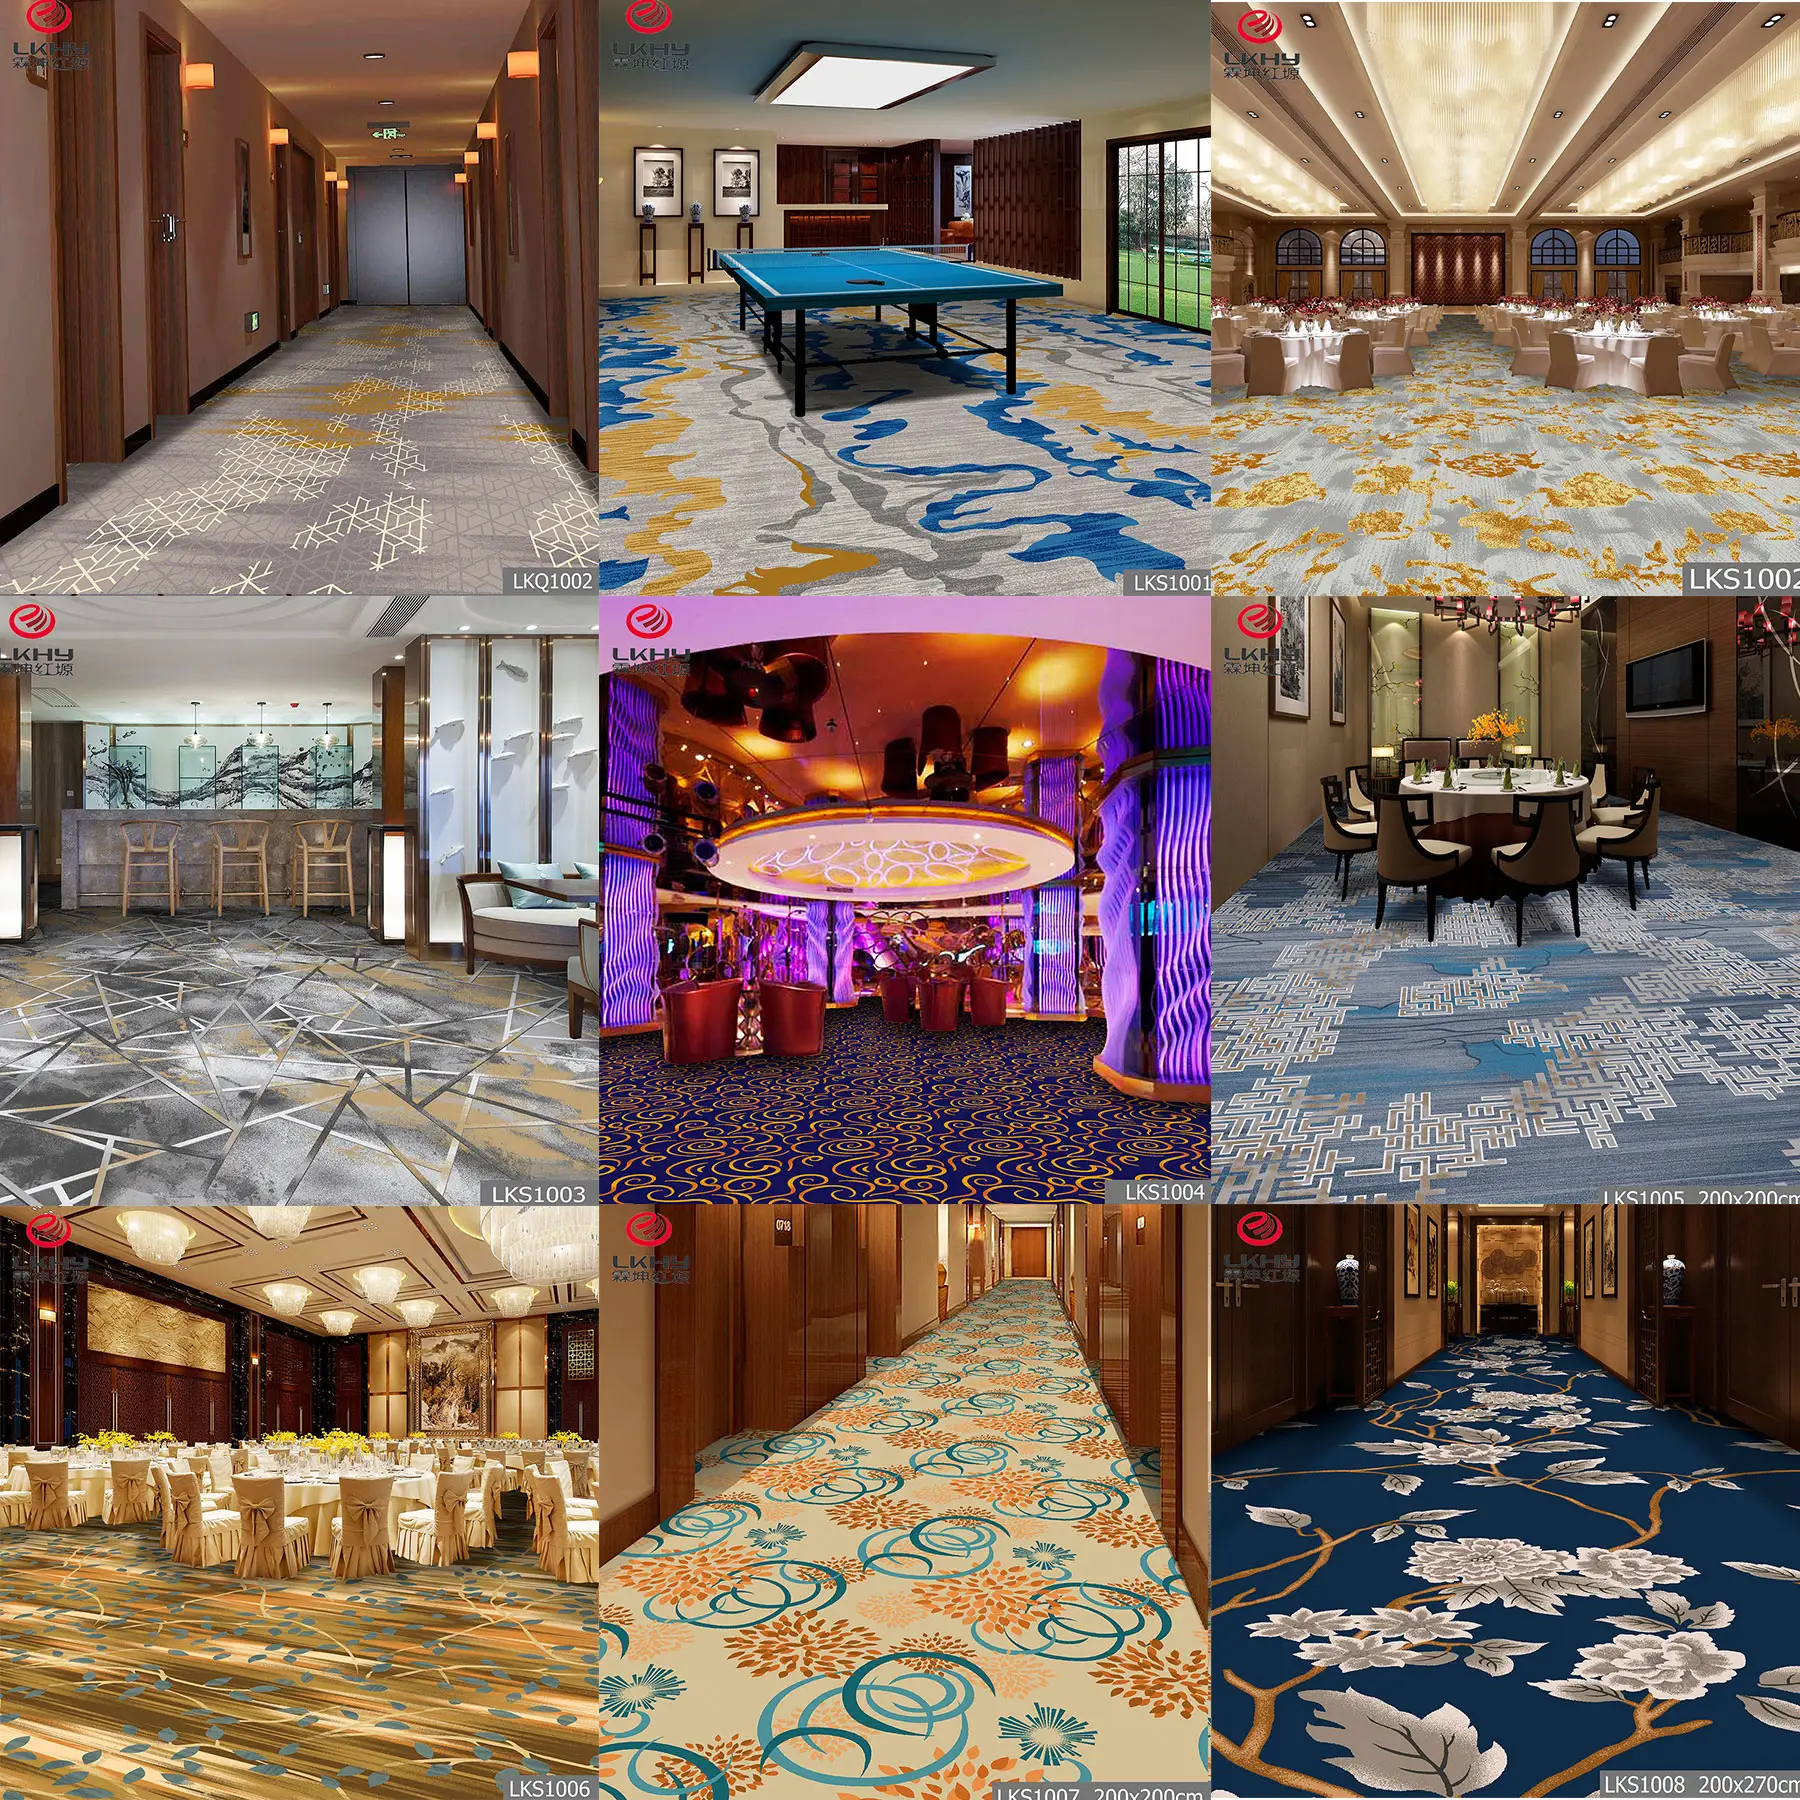 Desain Kustom Ebay Ruang Tamu Karpet Lantai Ruang Tamu Karpet Lantai Lampu Mewah Hotel Dicetak Karpet